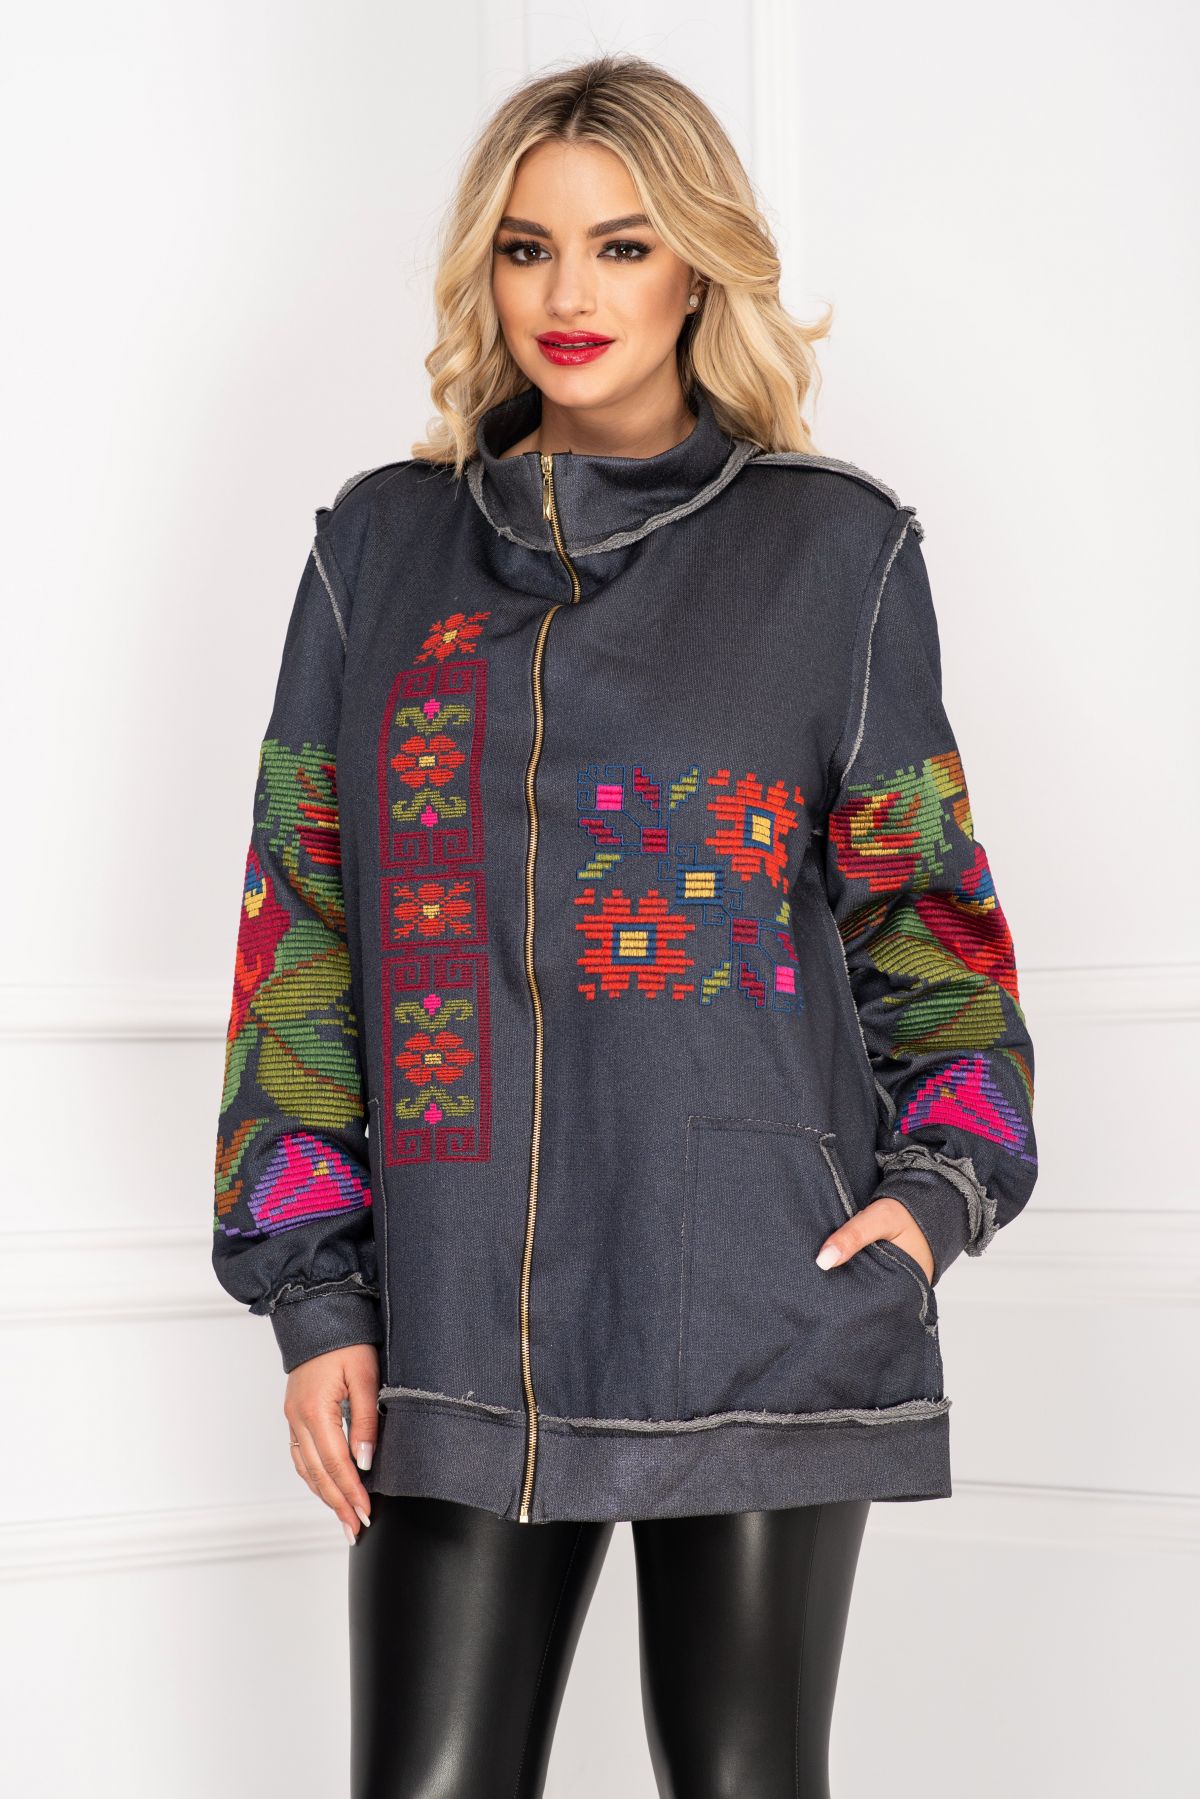 Jachetă casual Venezia gri din bumbac cu broderie florală